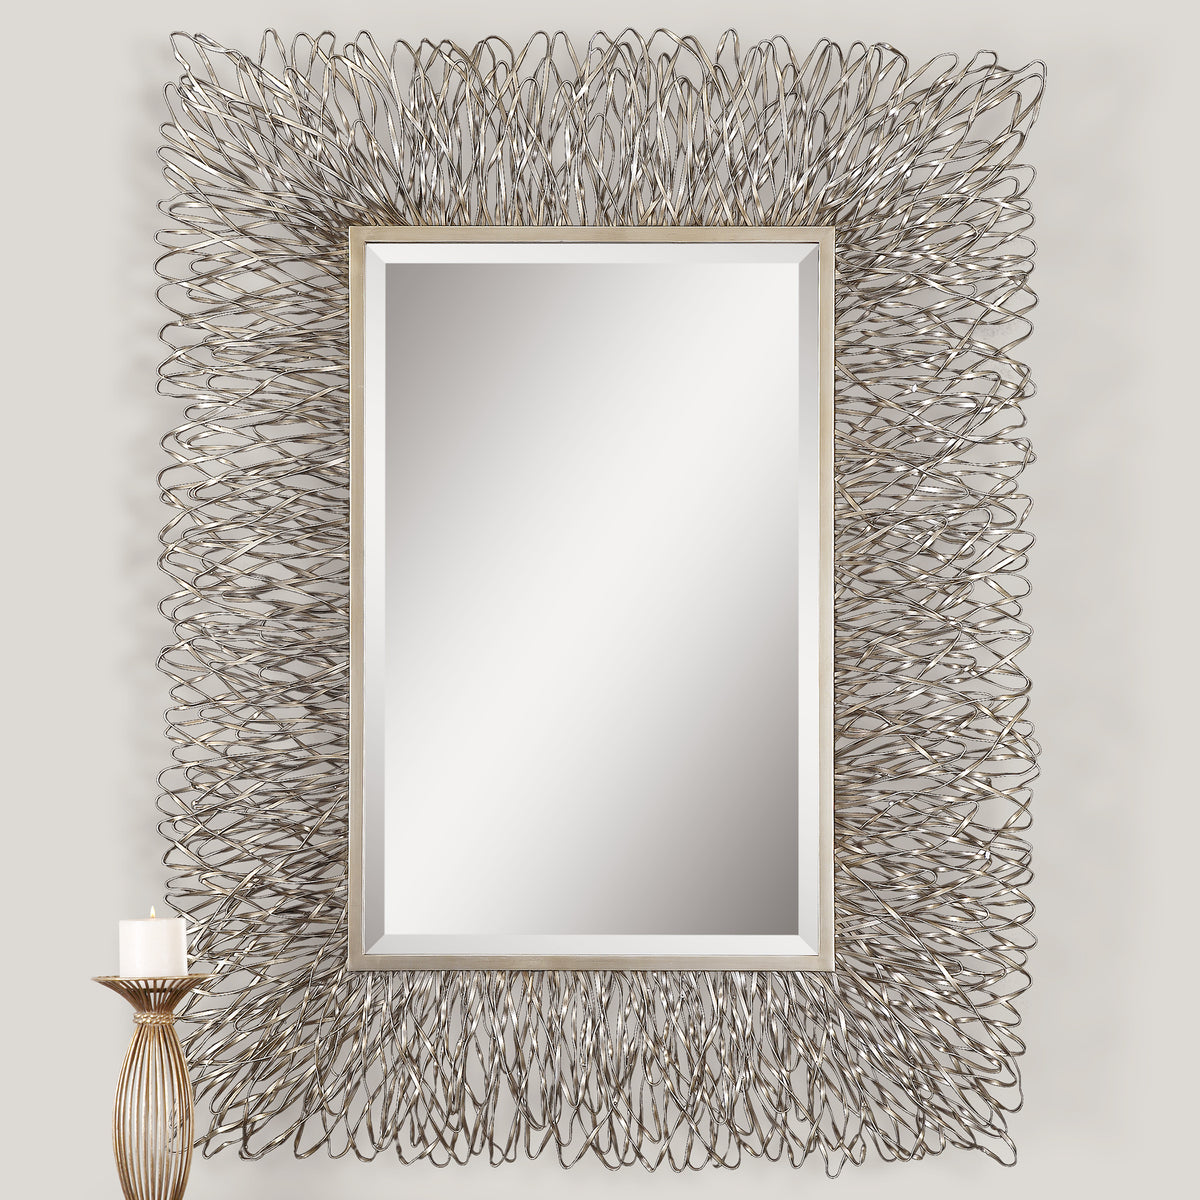 Uttermost Corbis Decorative Metal Mirror